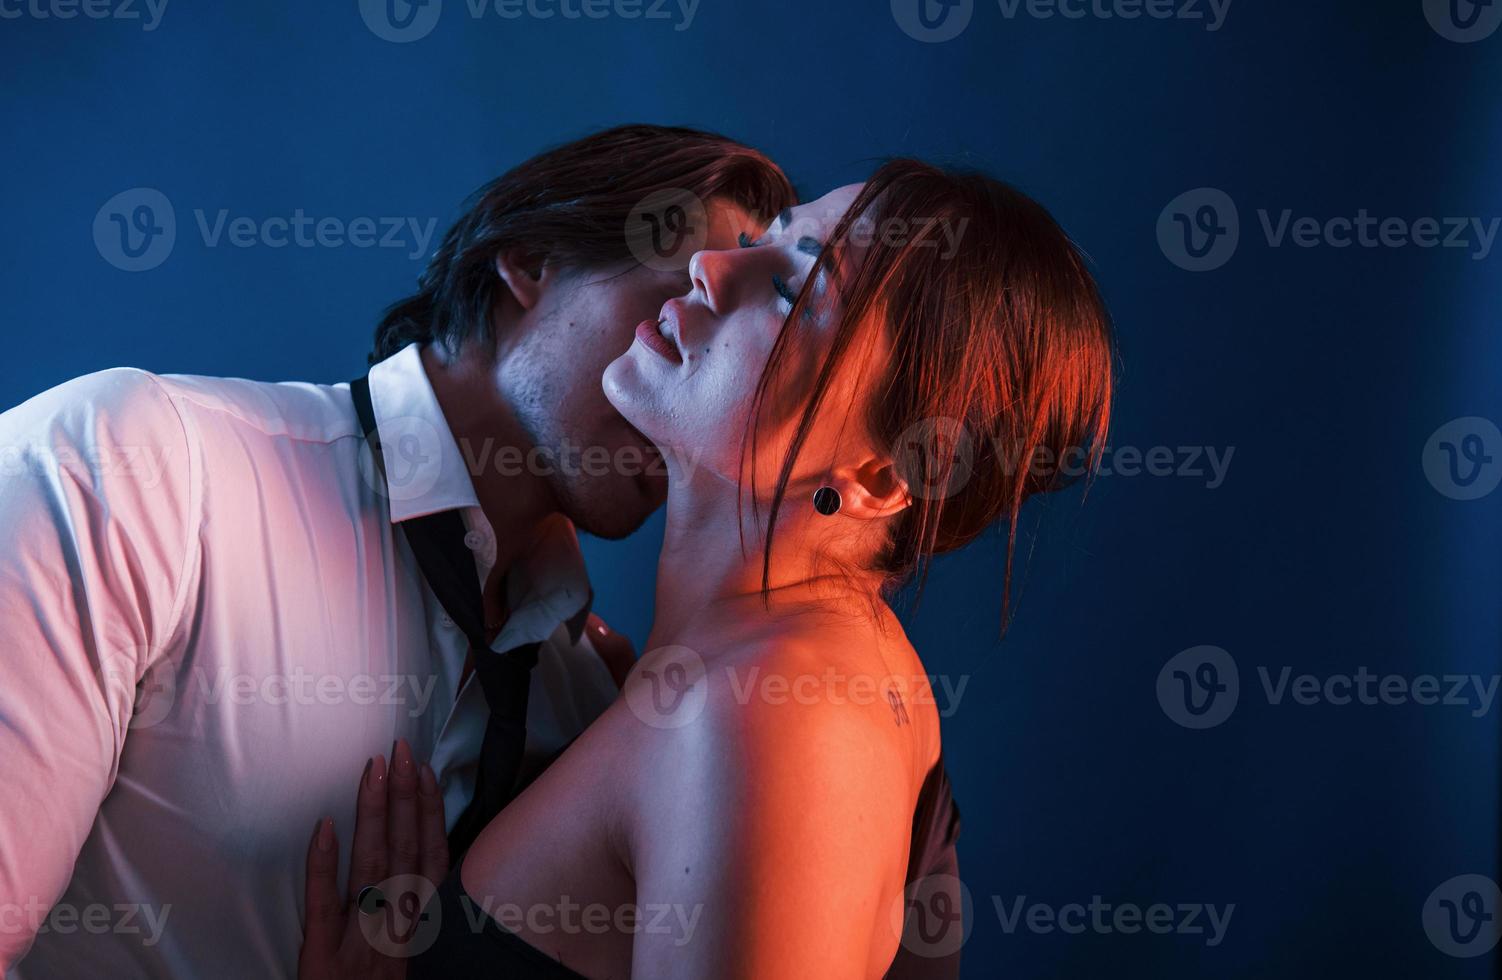 homem bonito com sua namorada gostosa está no estúdio com iluminação neon azul. casal apaixonado um pelo outro foto